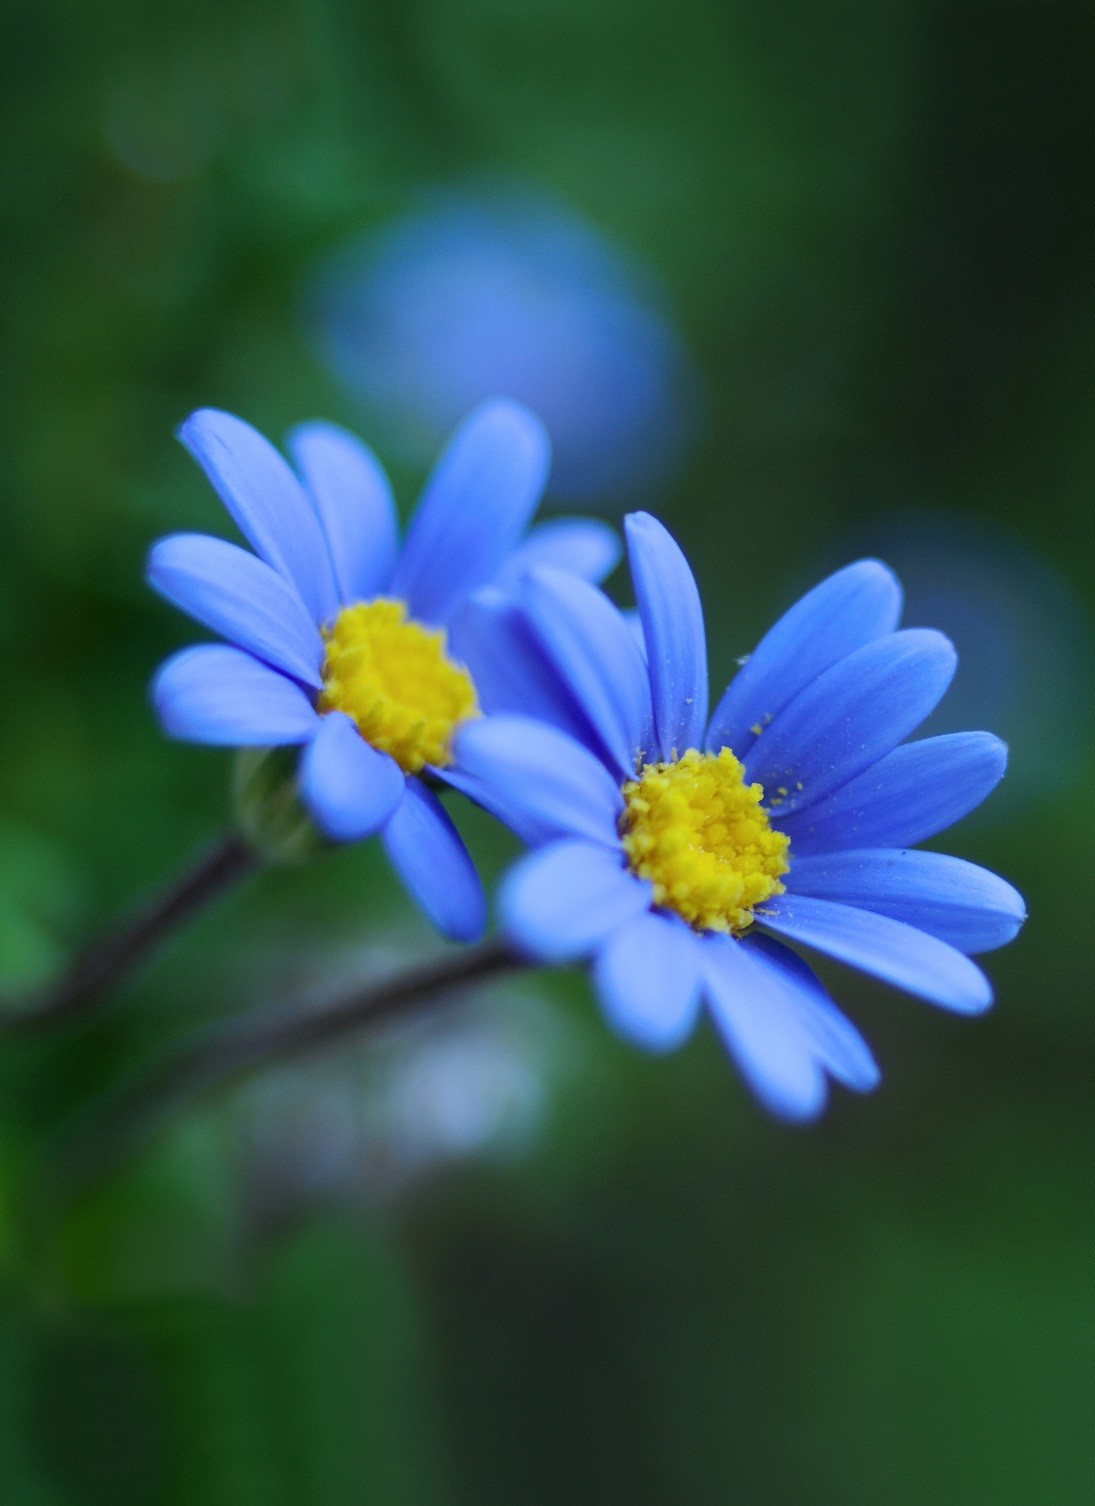 Hình Nền Nền Hoa Màu Xanh Tải Về Miễn Phí Hình ảnh hoa nổi hoa hoa  stereo Sáng Tạo Từ Lovepik